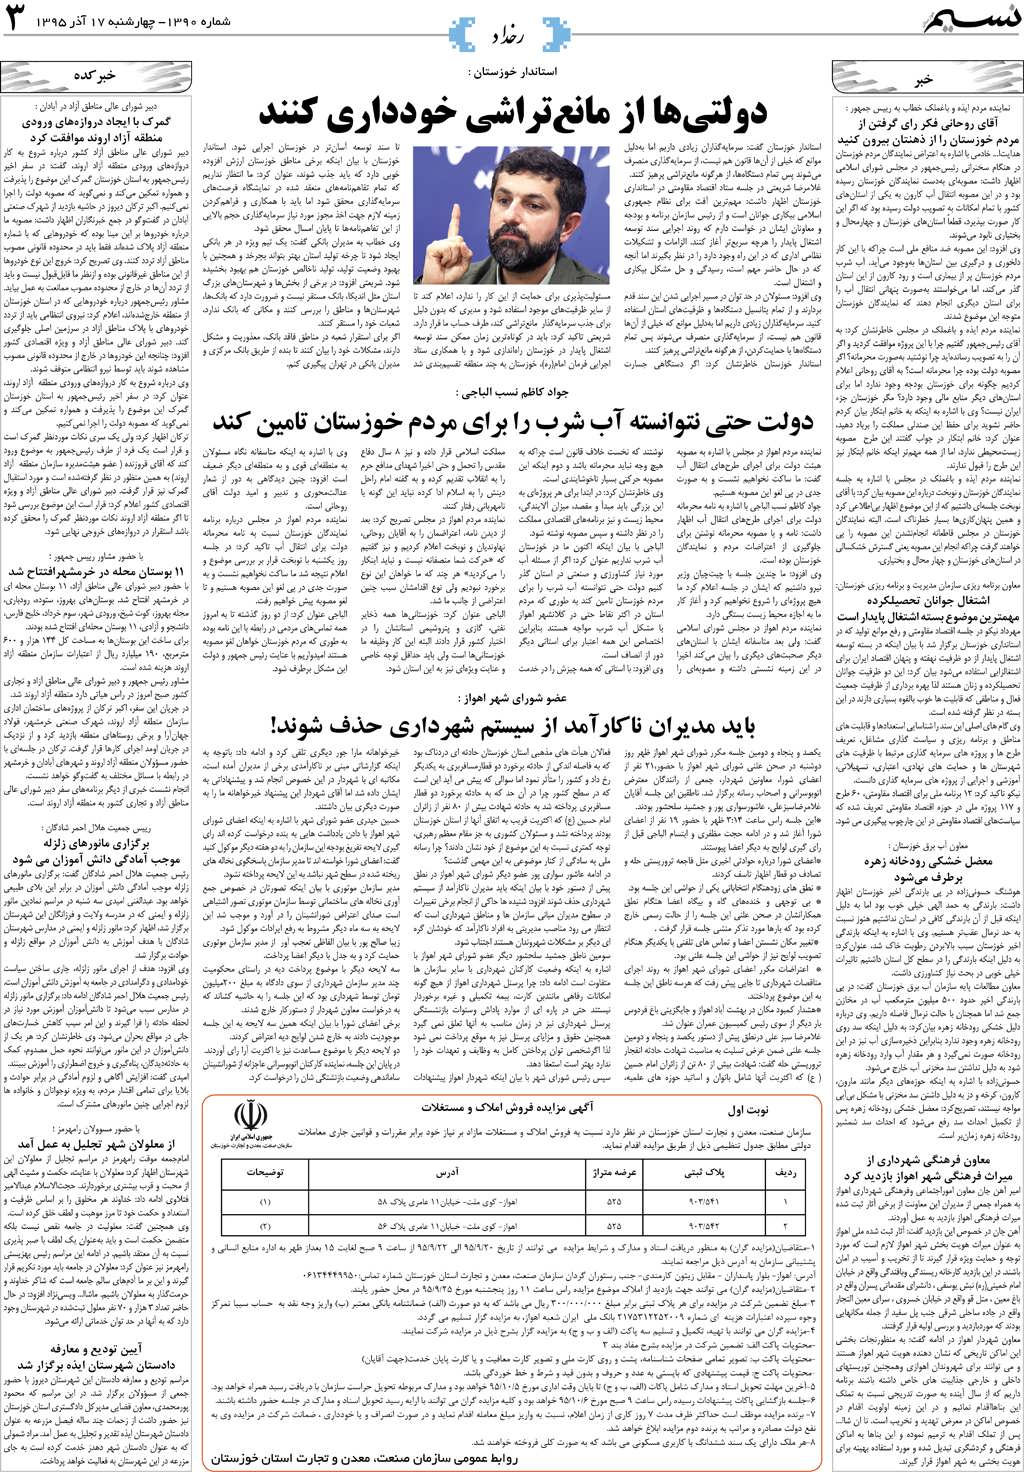 صفحه رخداد روزنامه نسیم شماره 1390